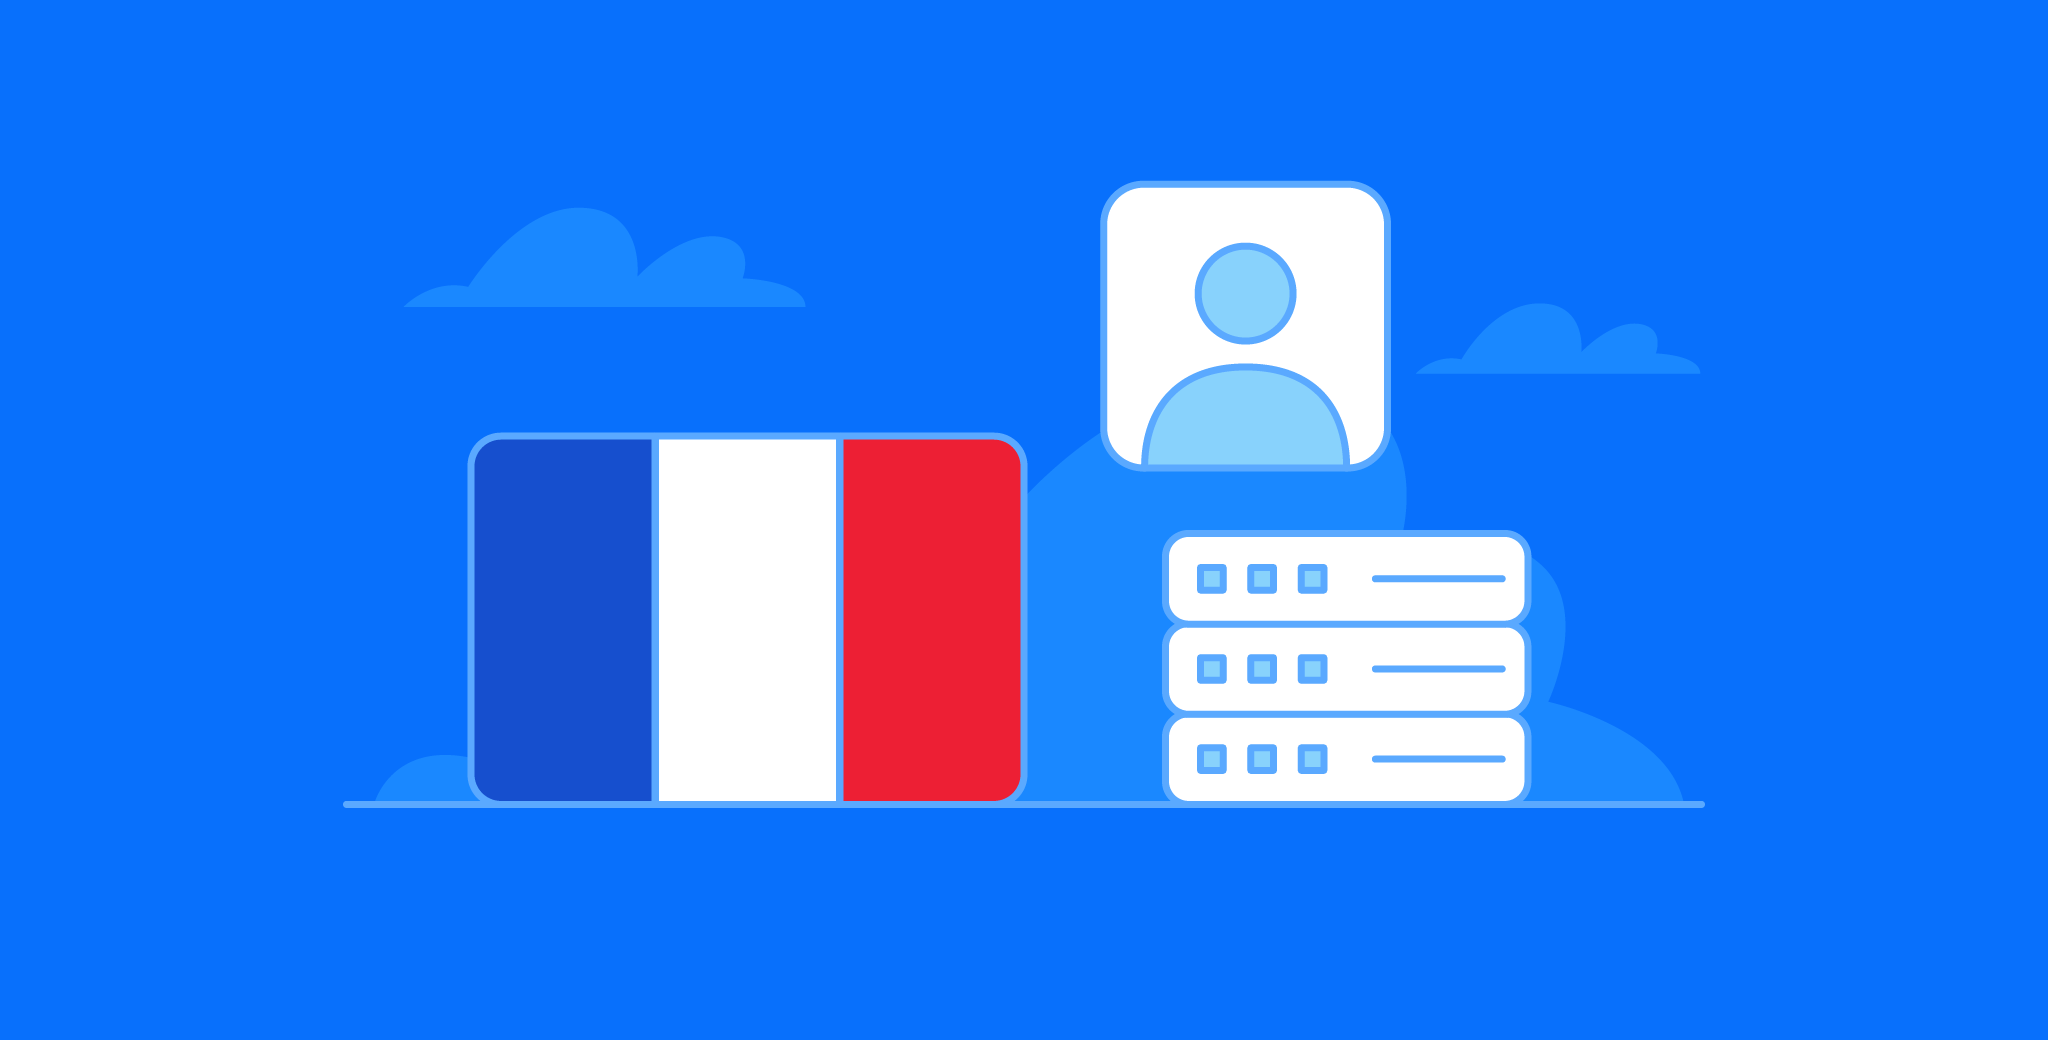 France LinkedIn People Profile Dataset